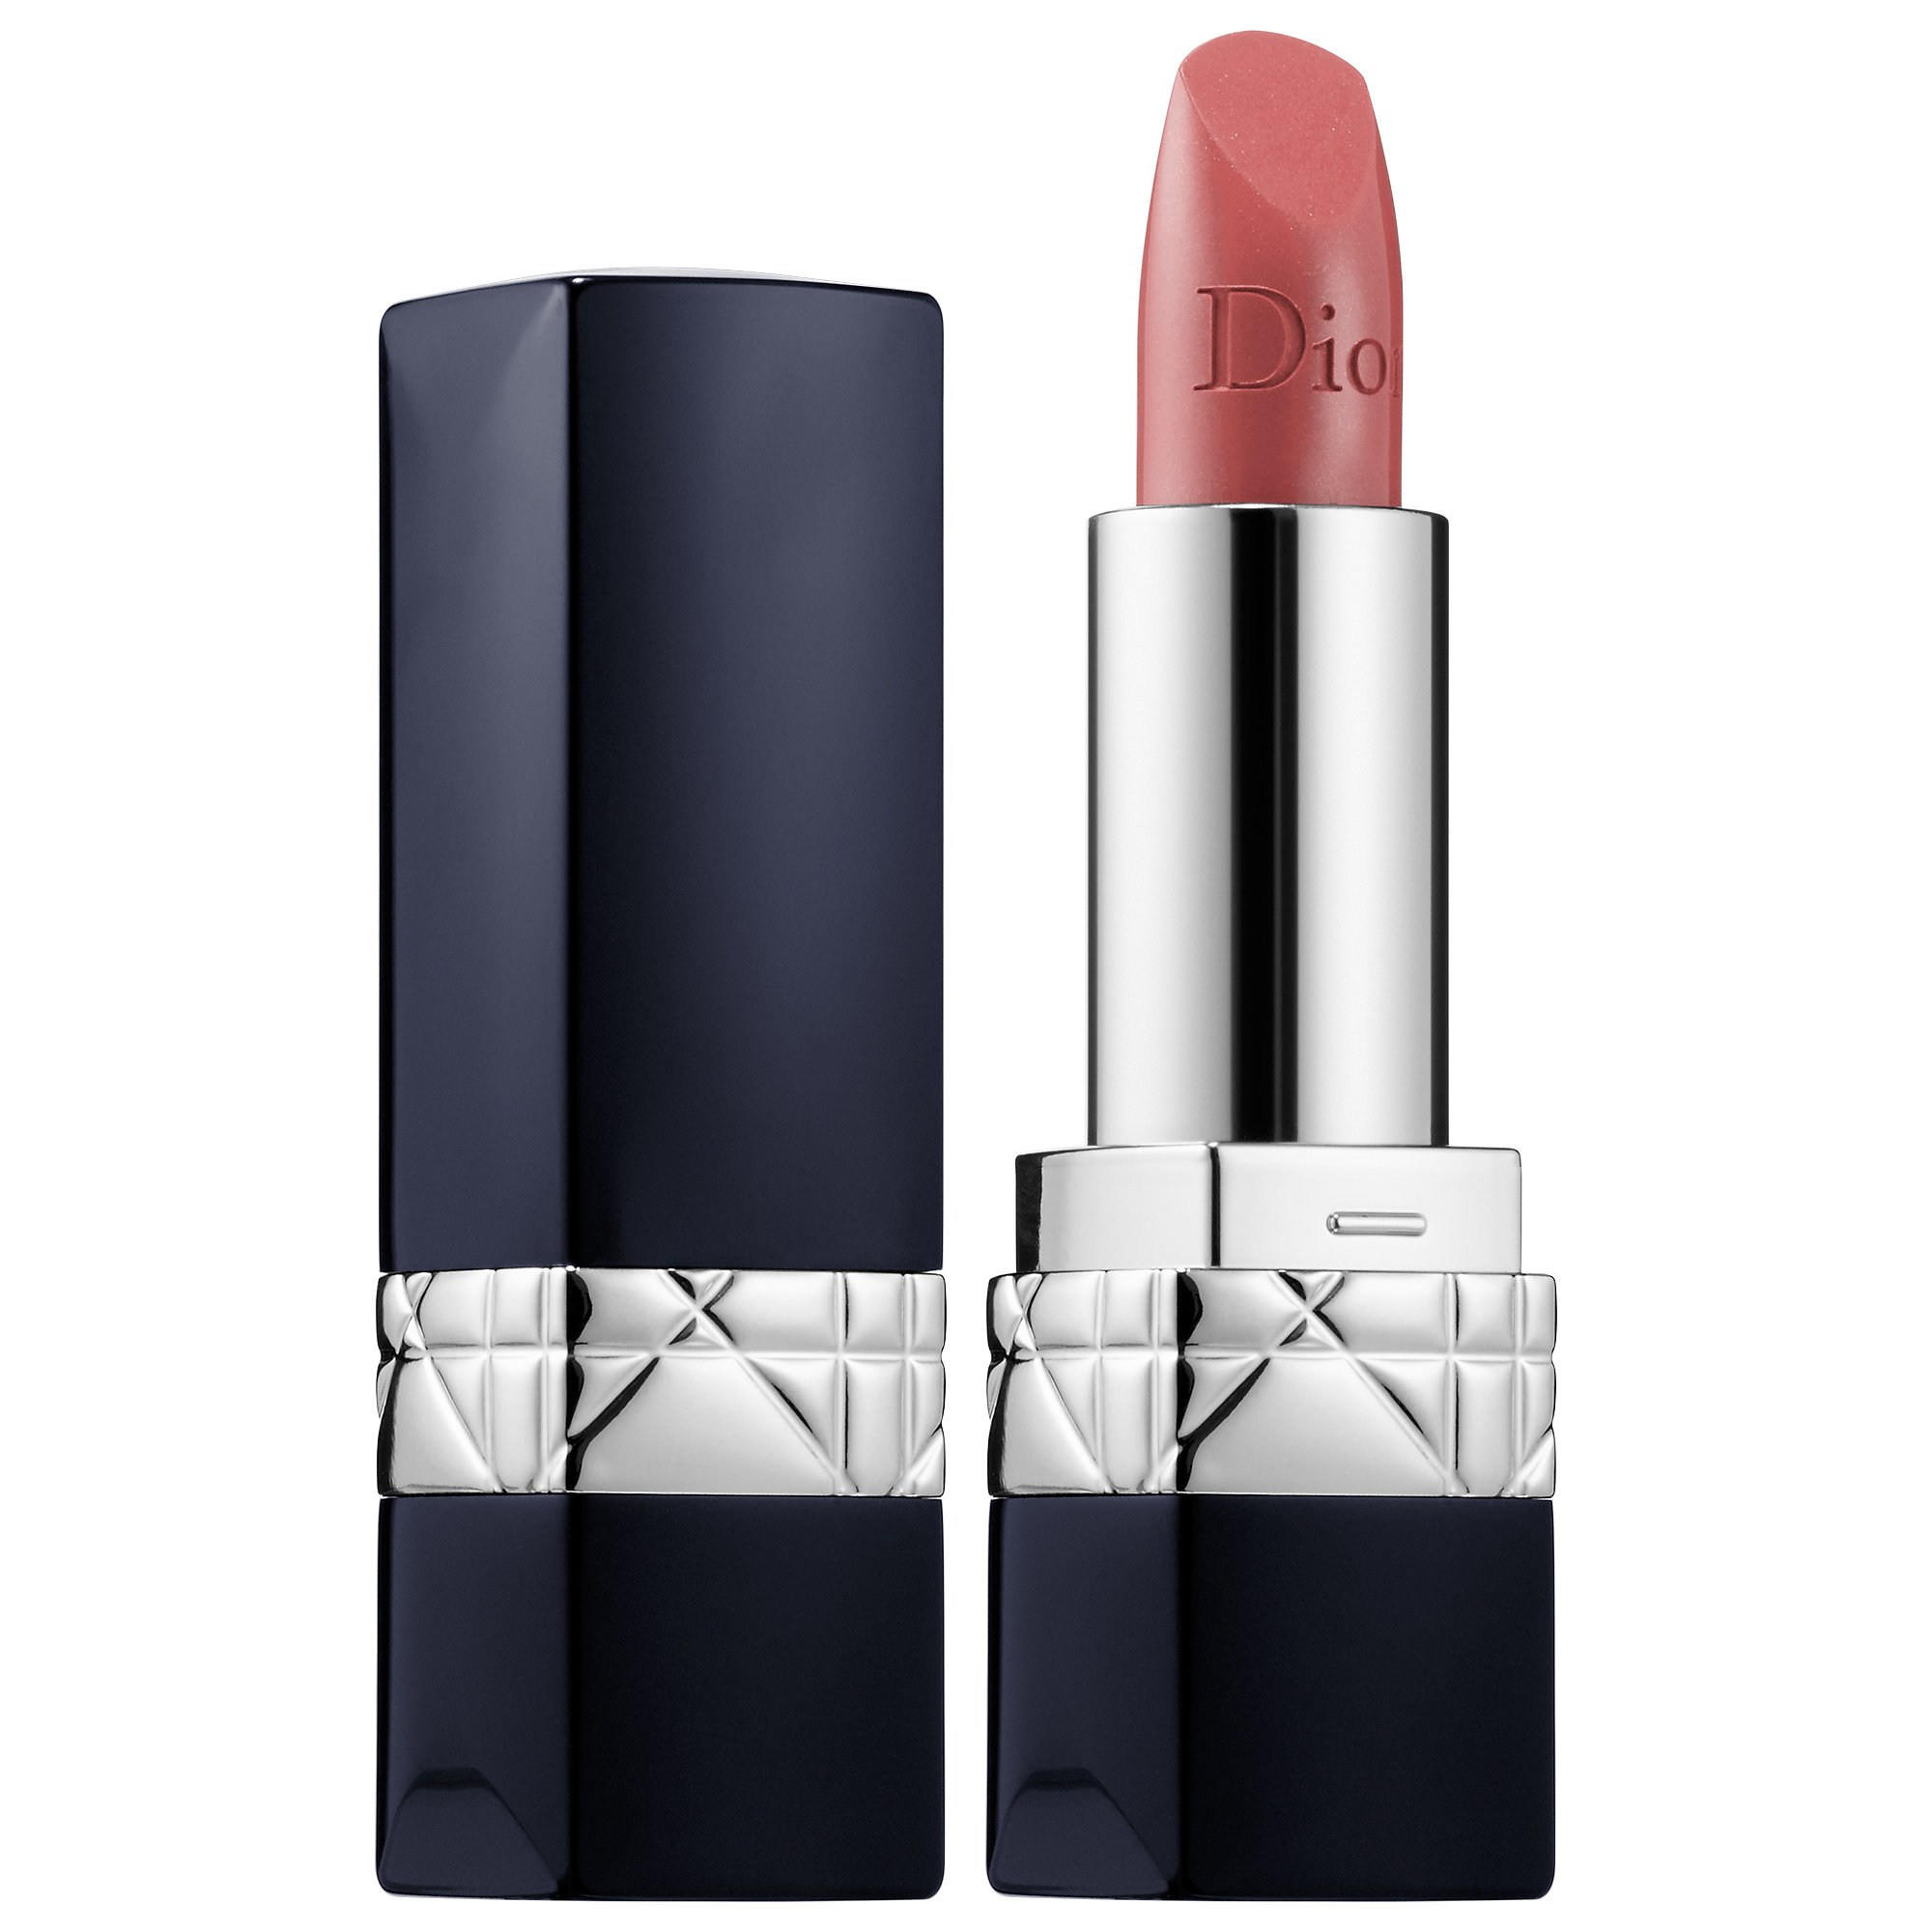 dior lipstick sensual matte 426